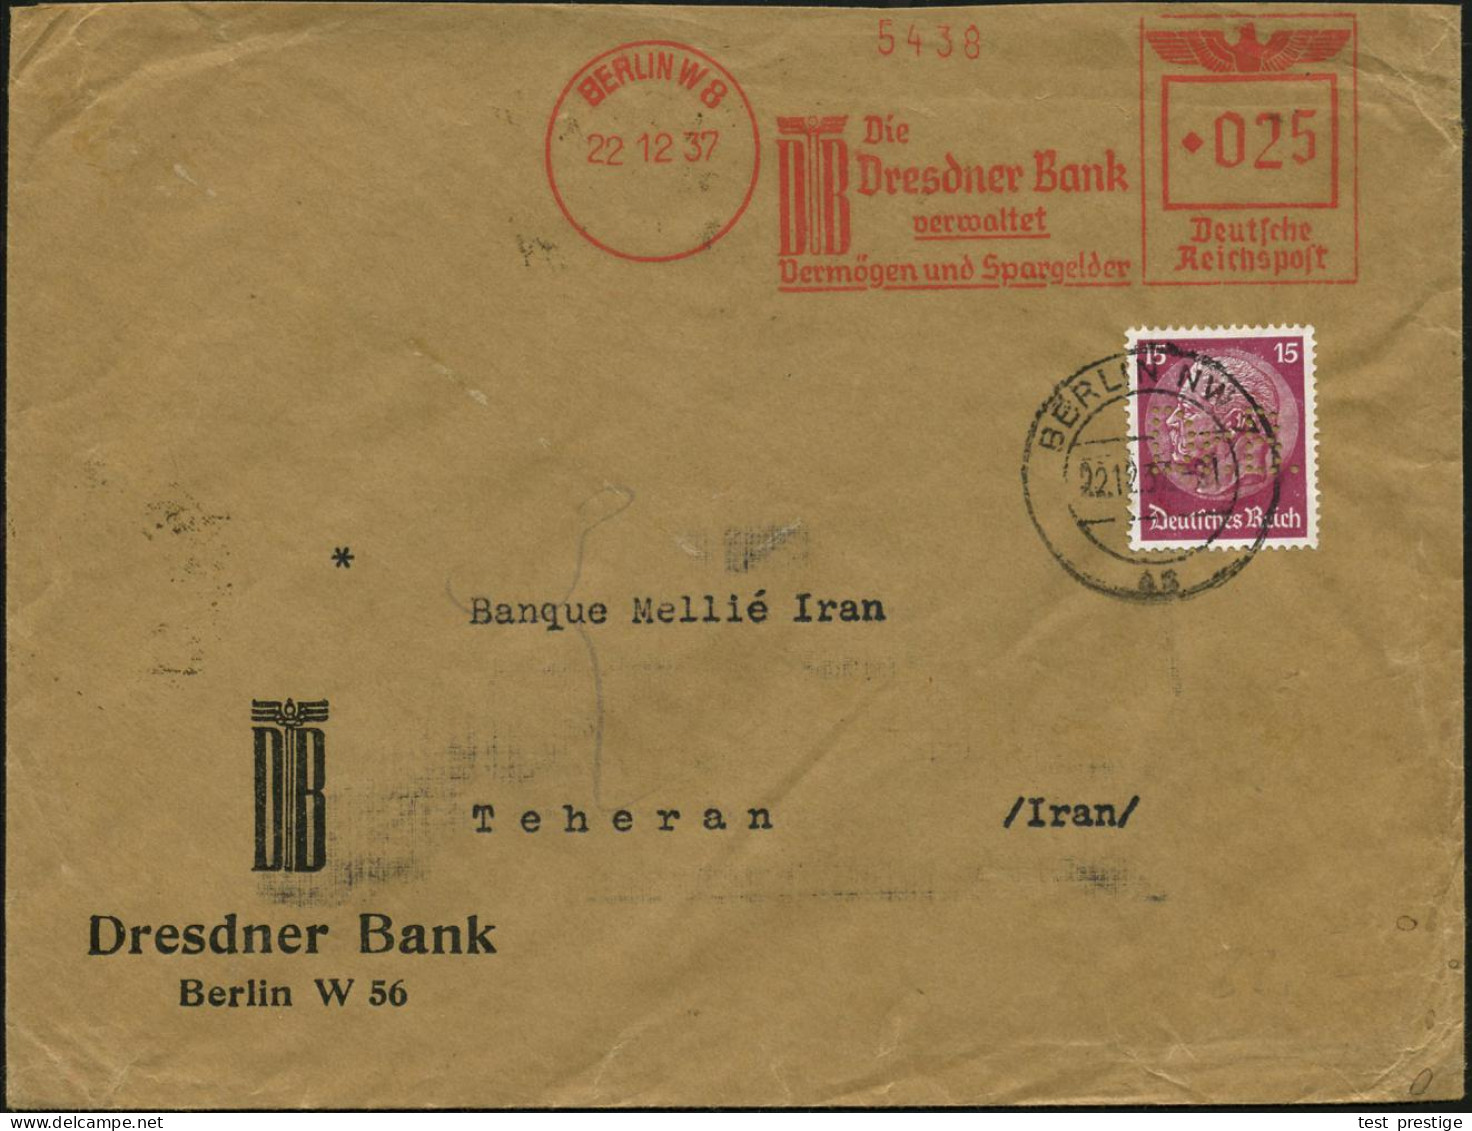 BERLIN W8/ DB/ Die/ Dresdner Bank/ Verwaltet/ Vermögen.. 1937 (22.12.) AFS Francotyp 025 Pf. Francotyp "Reichsadler" + 1 - Sonstige